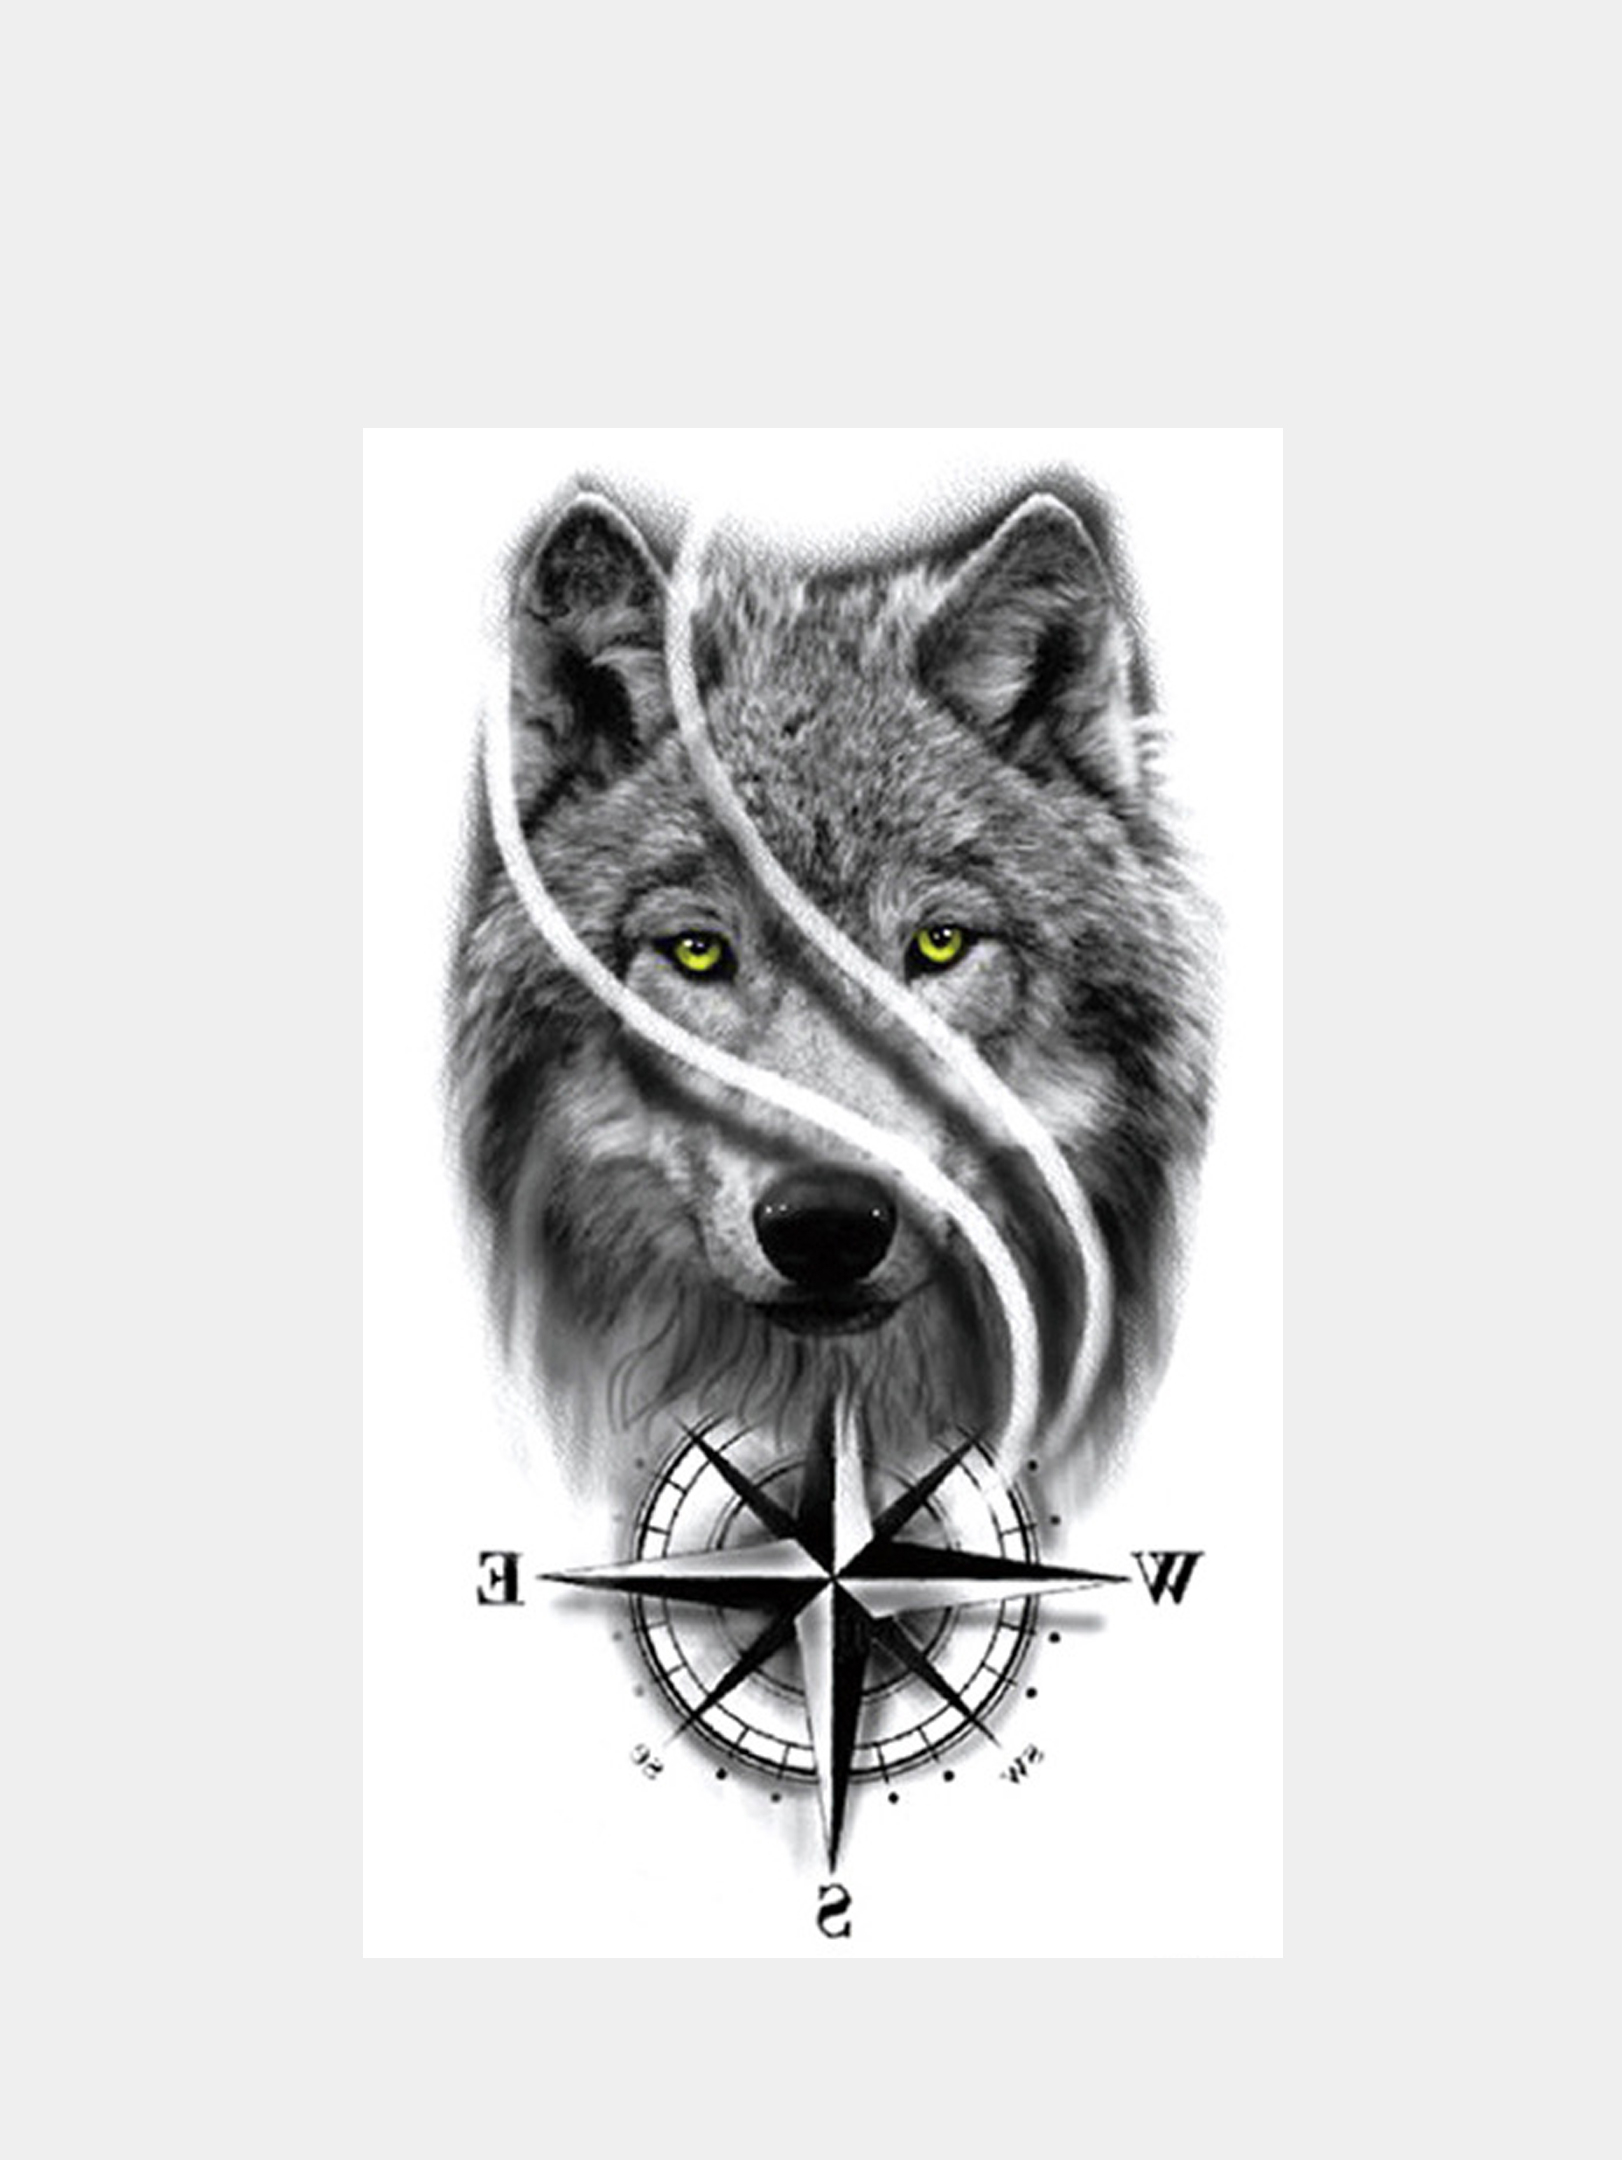 татуировки на руках мужские эскизы волки